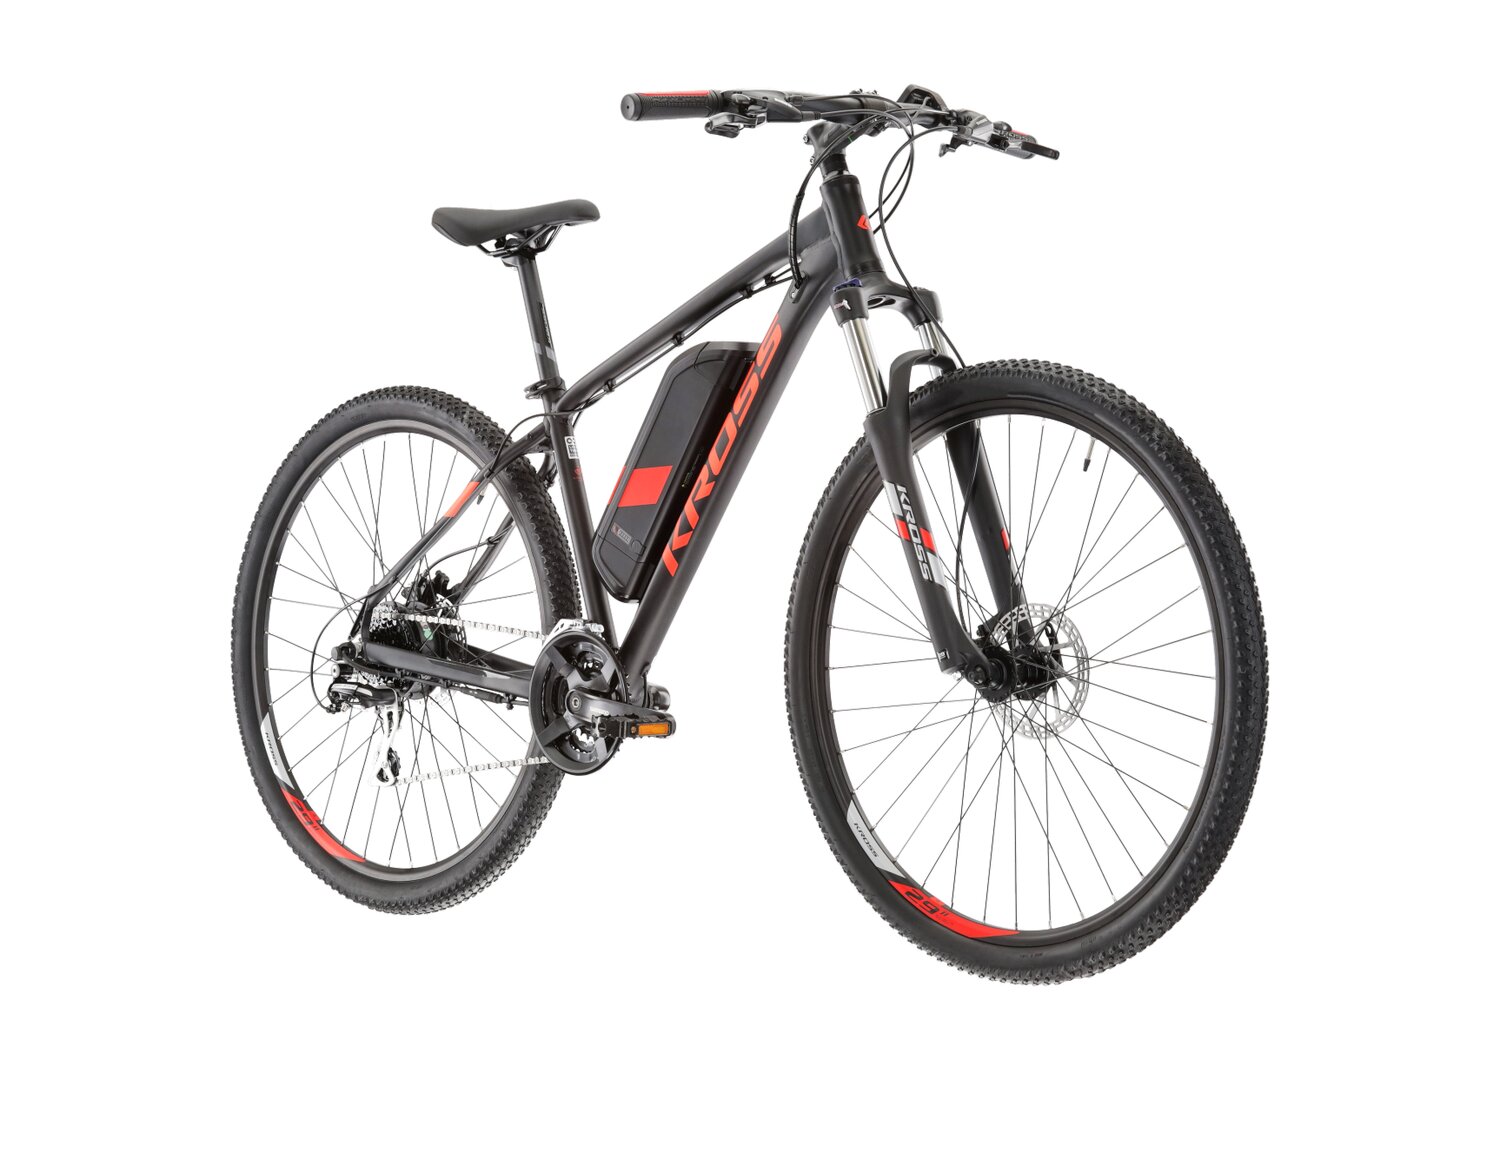 Elektryczny rower górski MTB Kross Hexagon Boost 1.0 522 Wh na aluminiowej ramie w kolorze czarnym wyposażony w osprzęt Shimano i napęd elektryczny Bafang